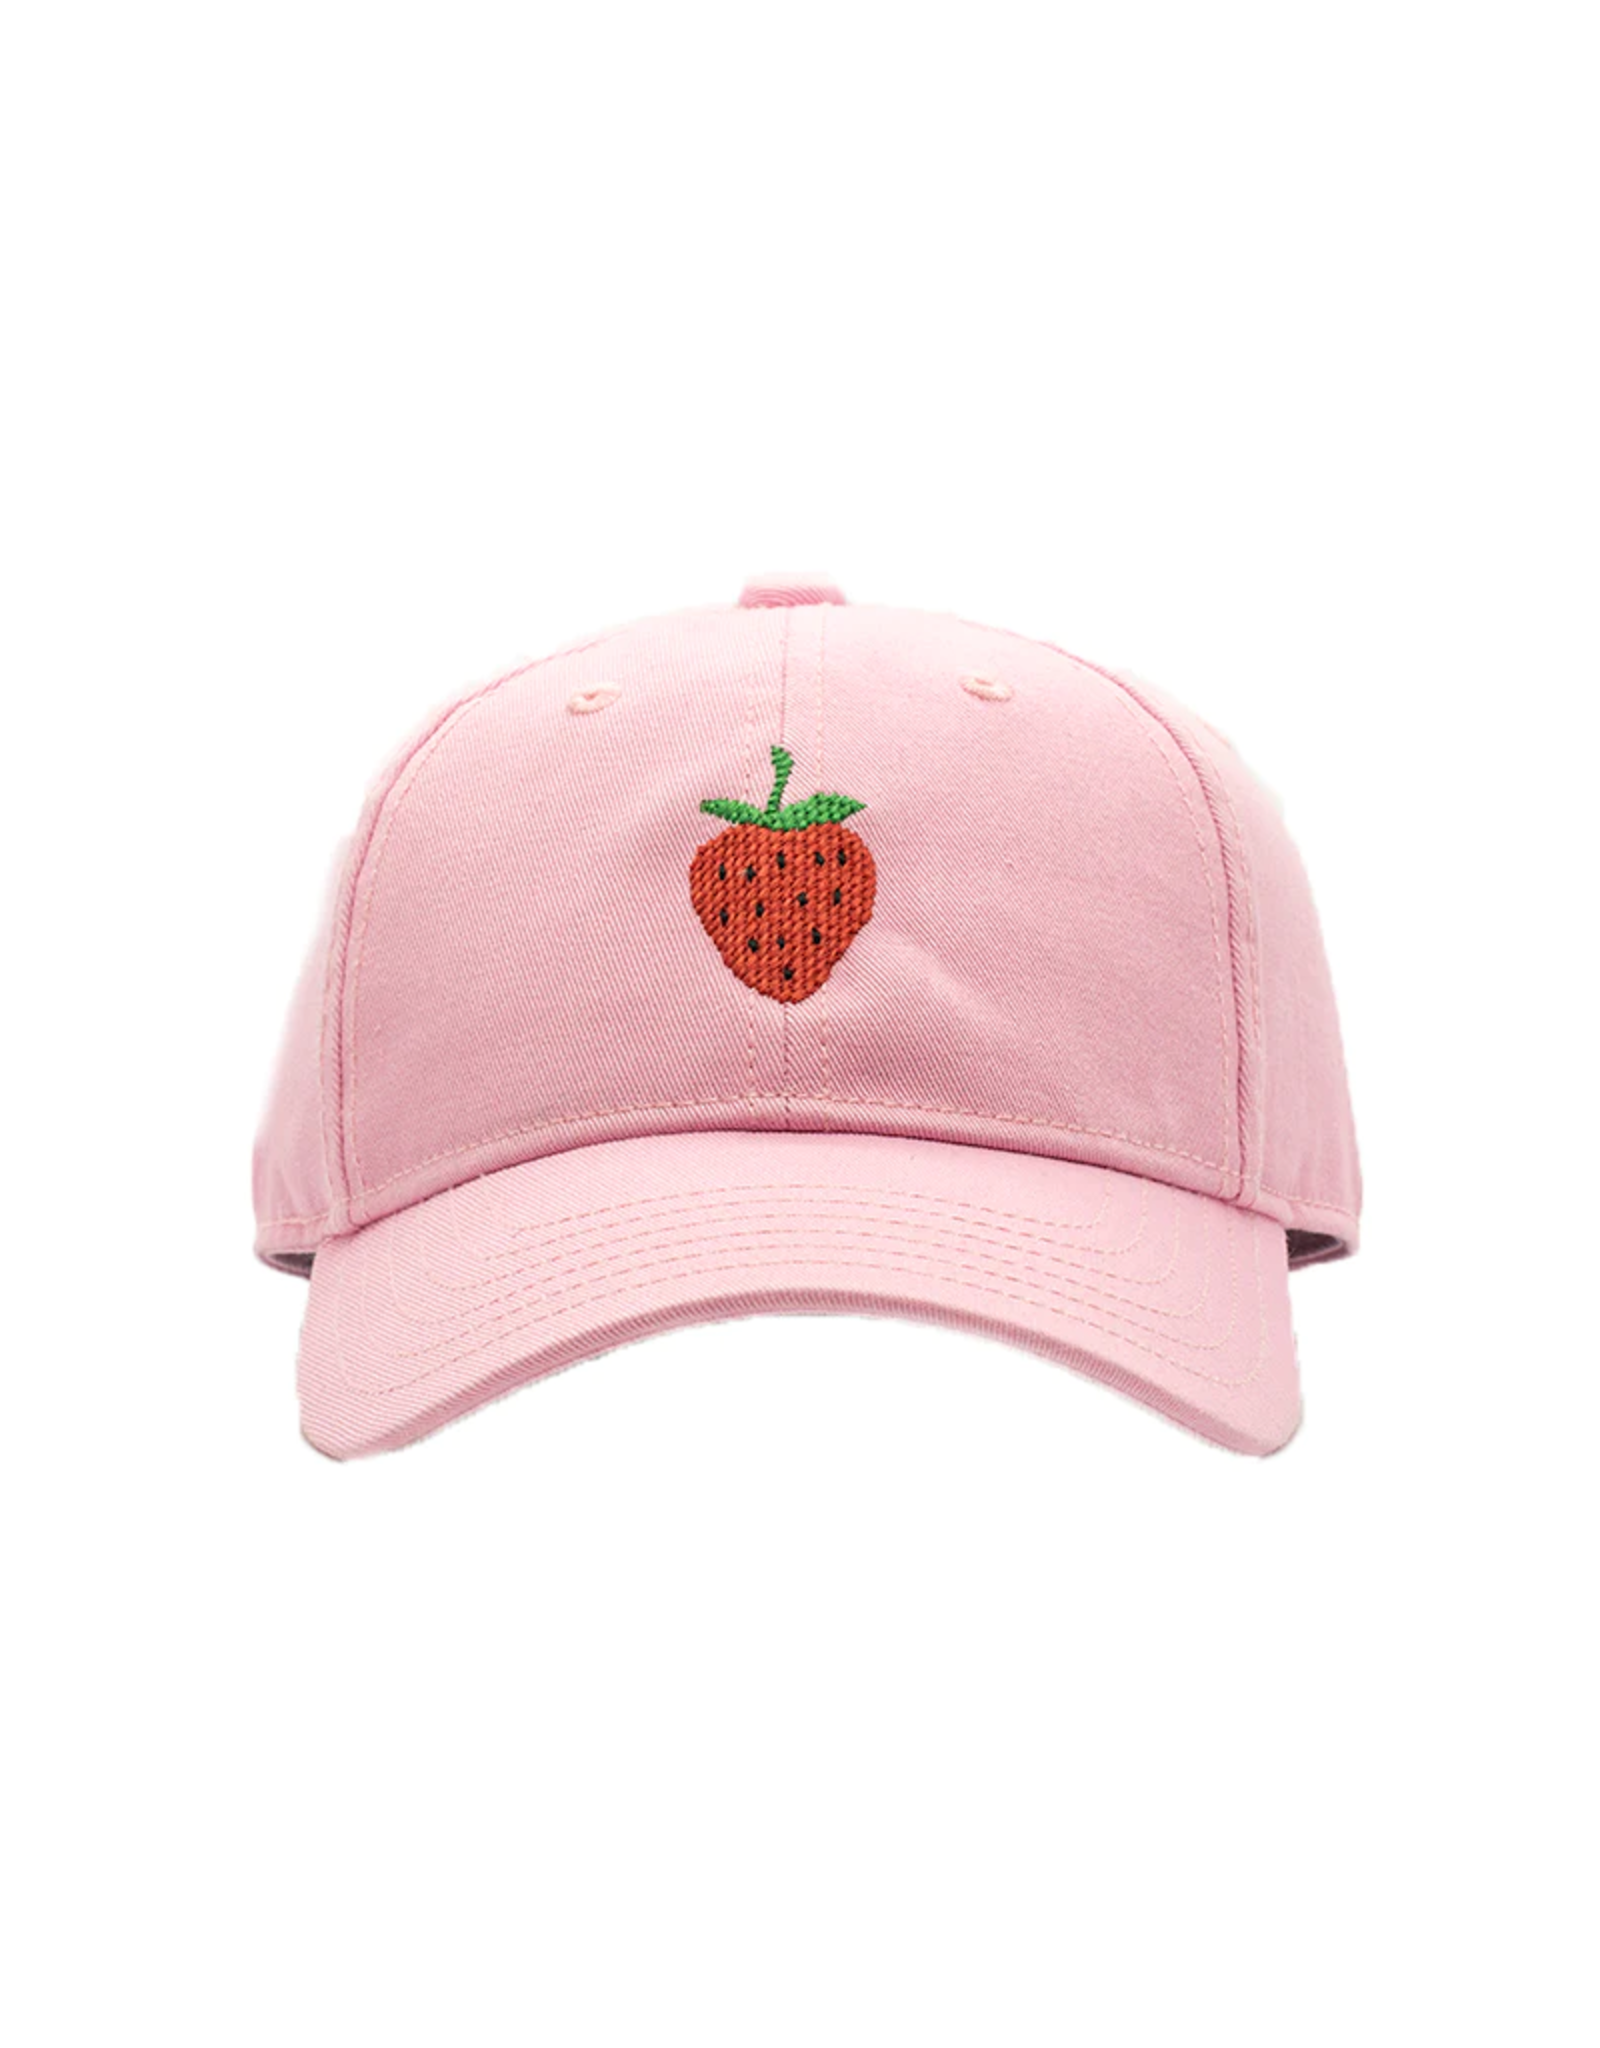 Harding Lane HL Embroidered Hat Lt. Pink Strawberry